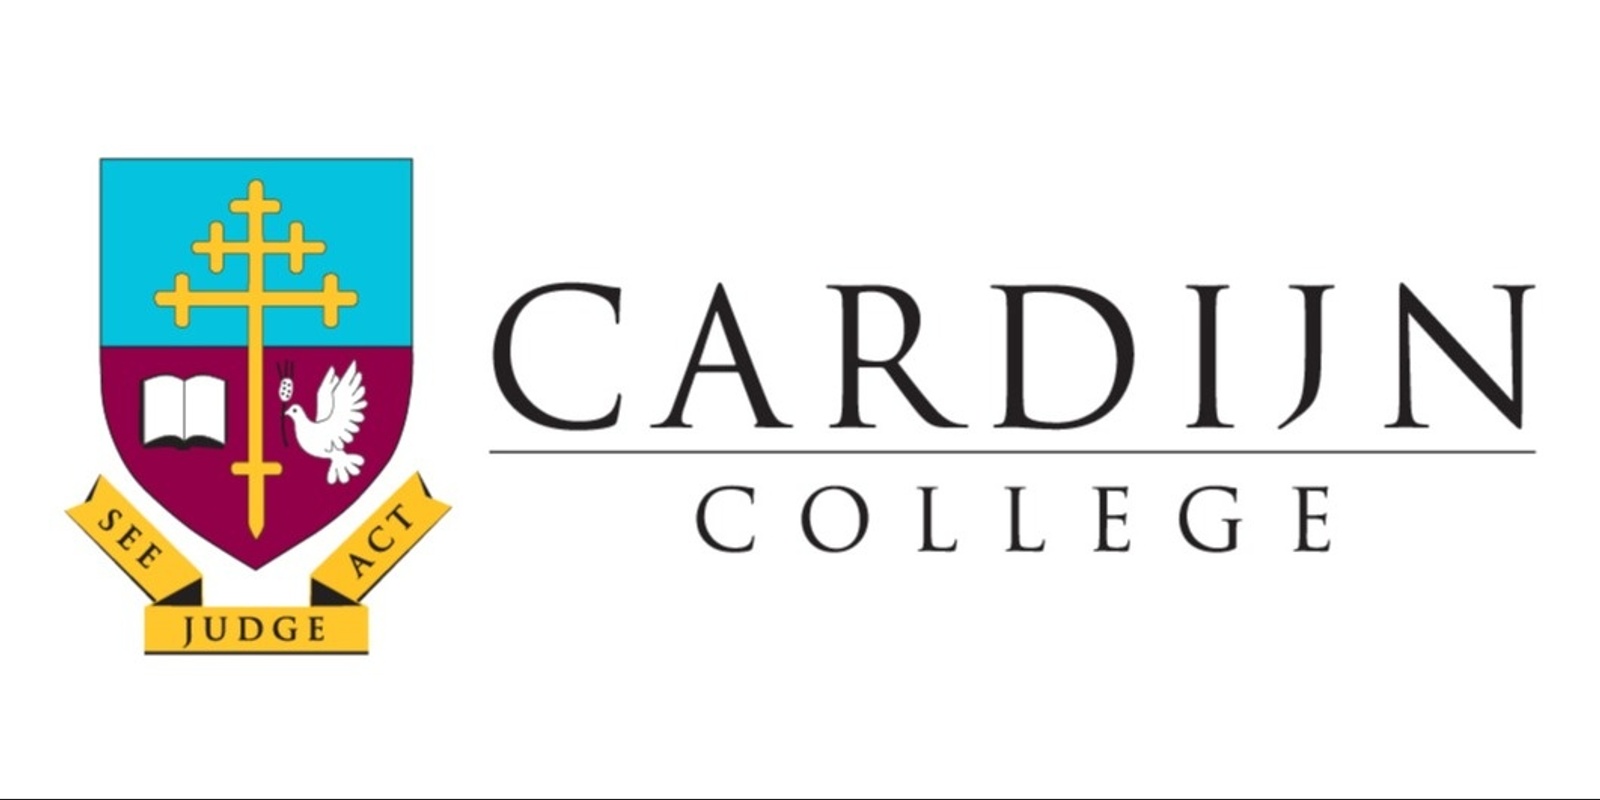 Cardijn College's banner